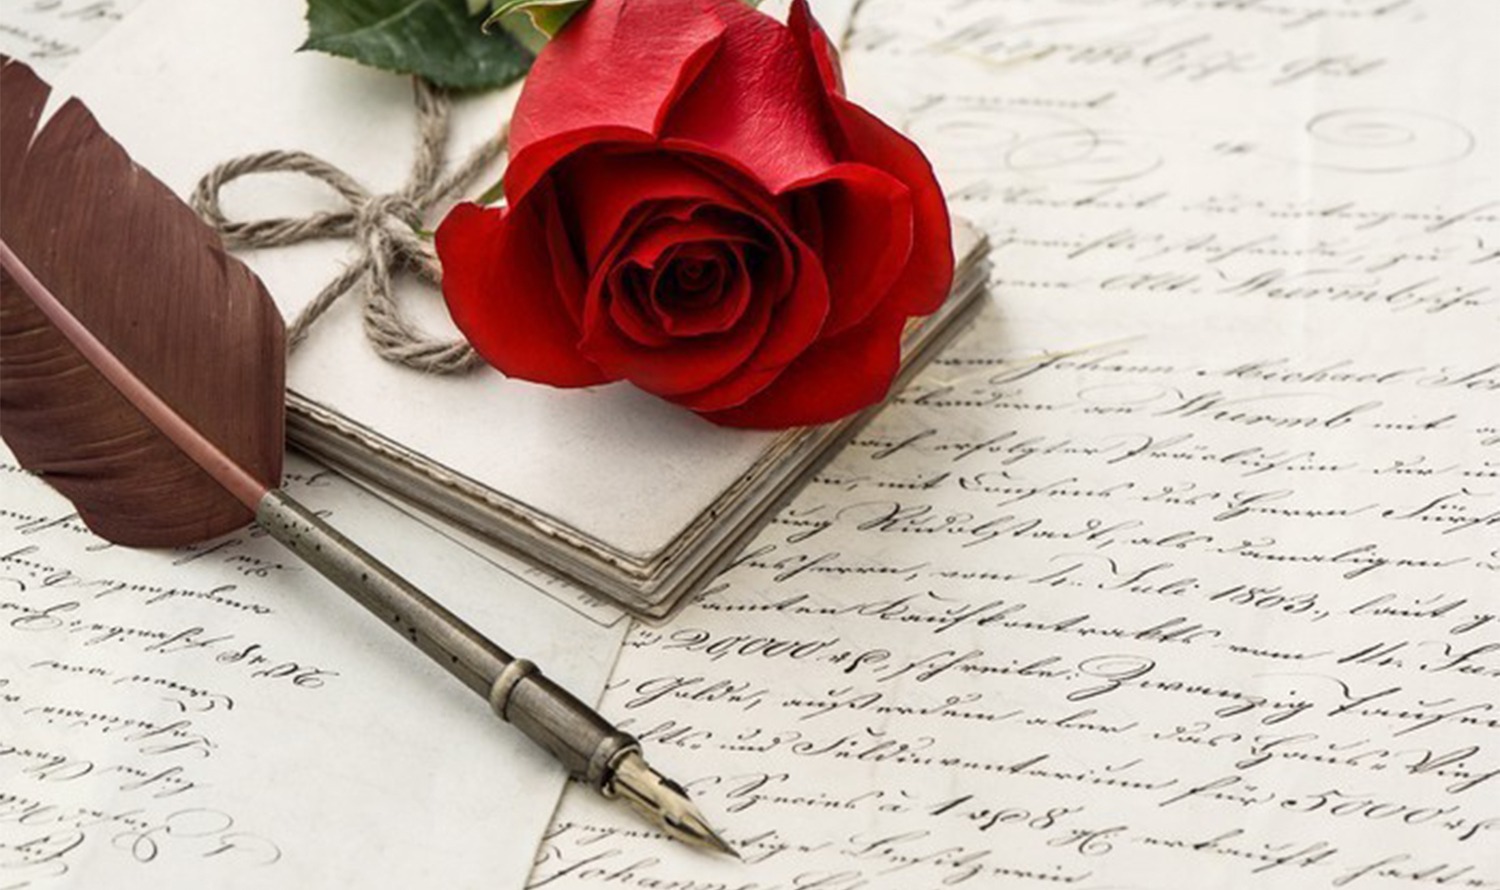 L&#39;image présente une rose rouge, un vieux stylo plume et plusieurs lettres manuscrites, créant une atmosphère nostalgique.